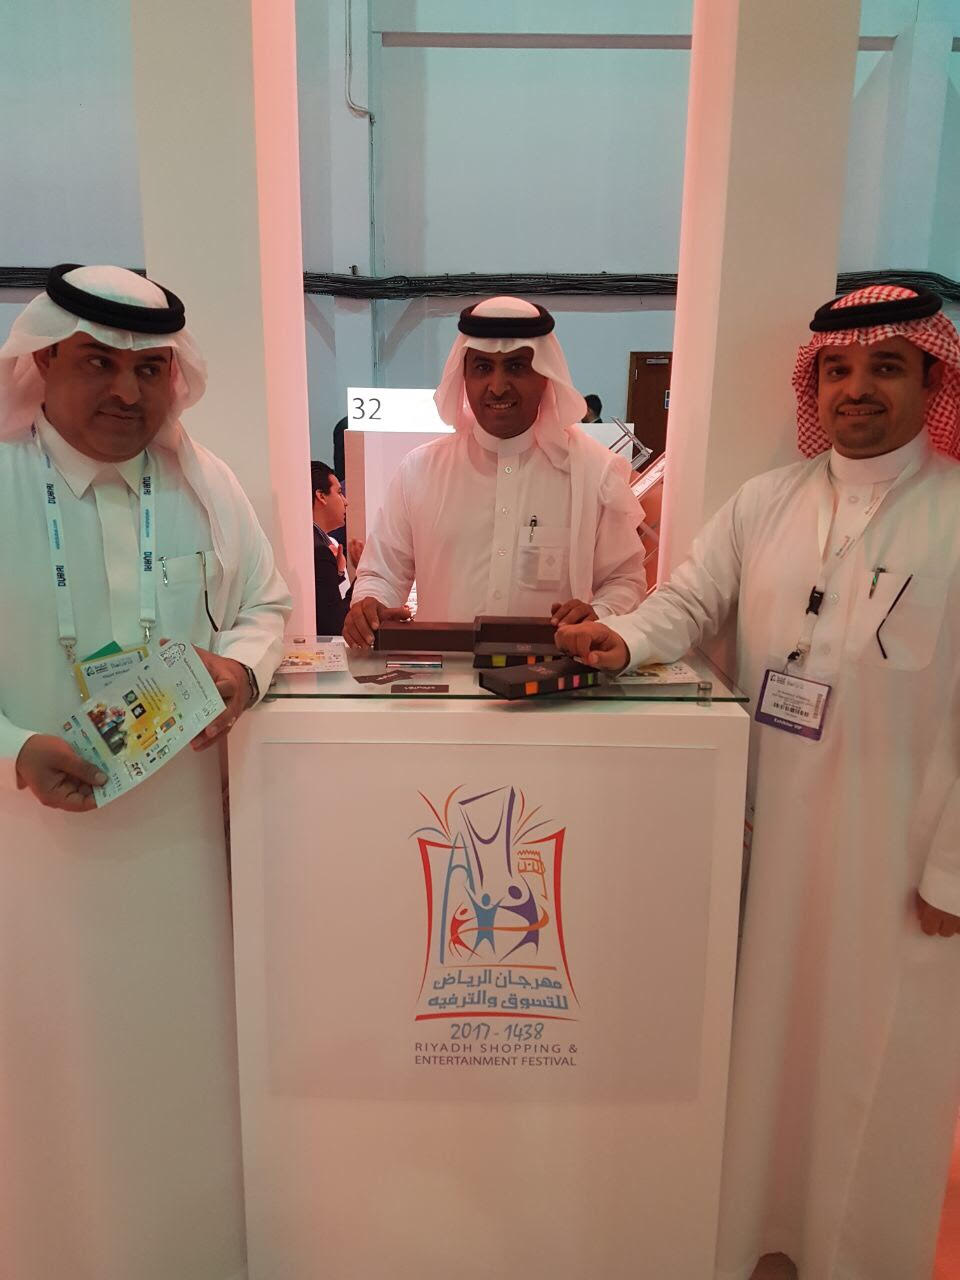 مهرجان الرياض للتسوّق والترفيه في ملتقى سفر دبي